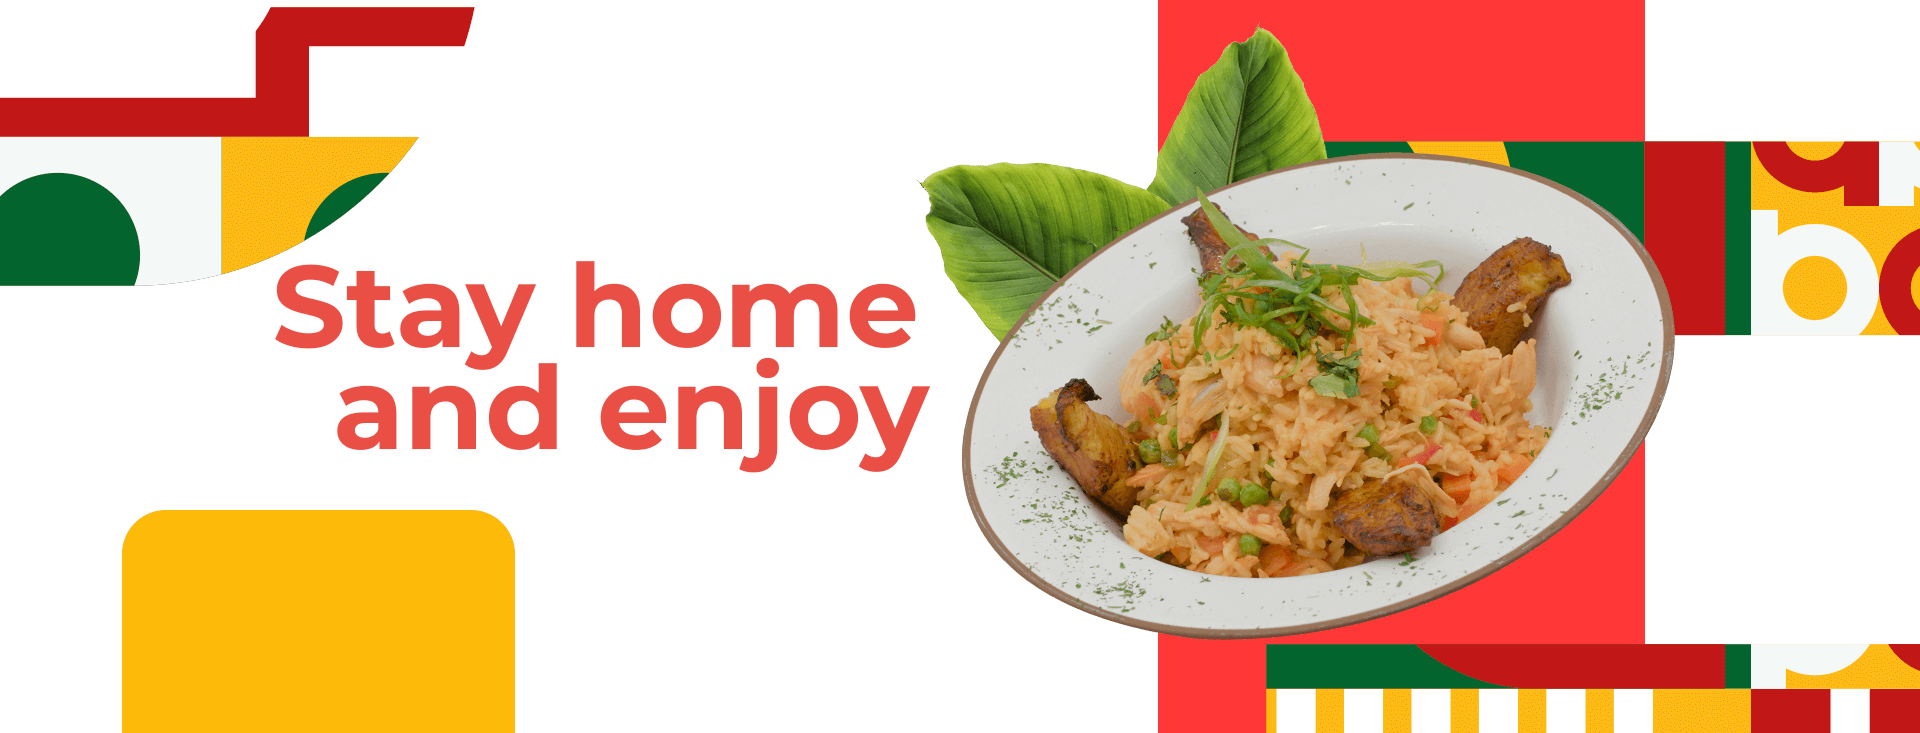 Inca paisa restaurant online order banner with chicken rice dish